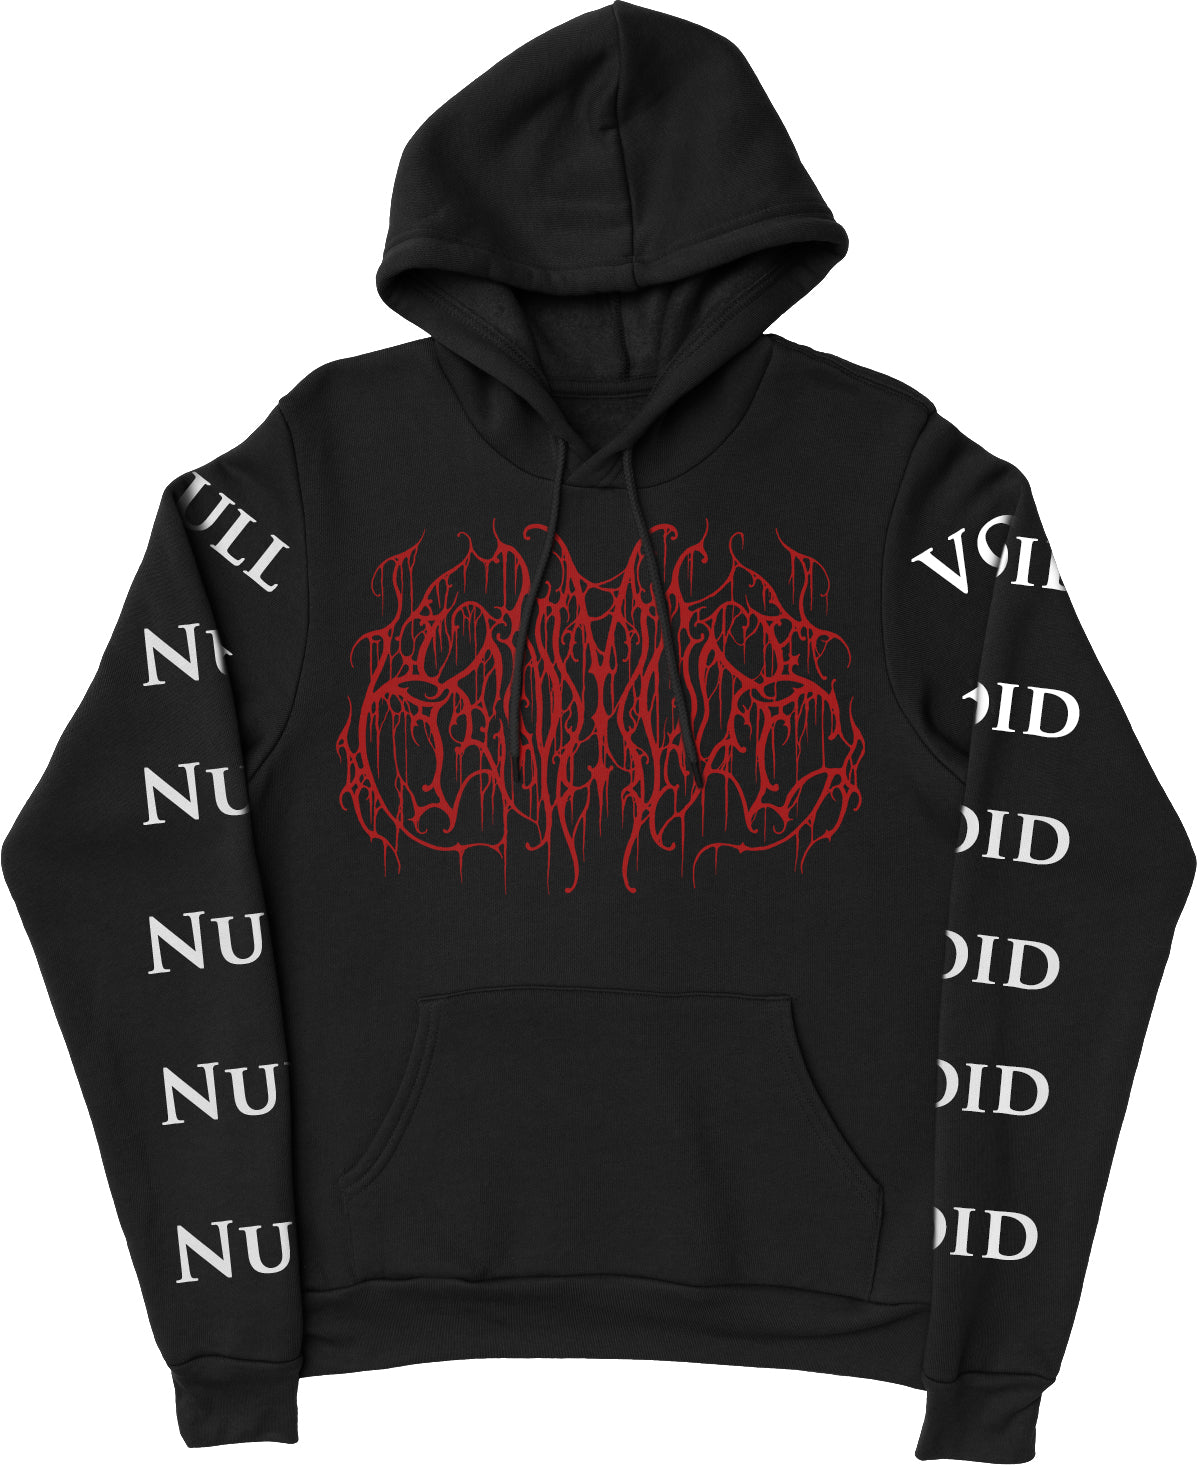 NULL/VOID extreme metal hoodie + longsleeve combo